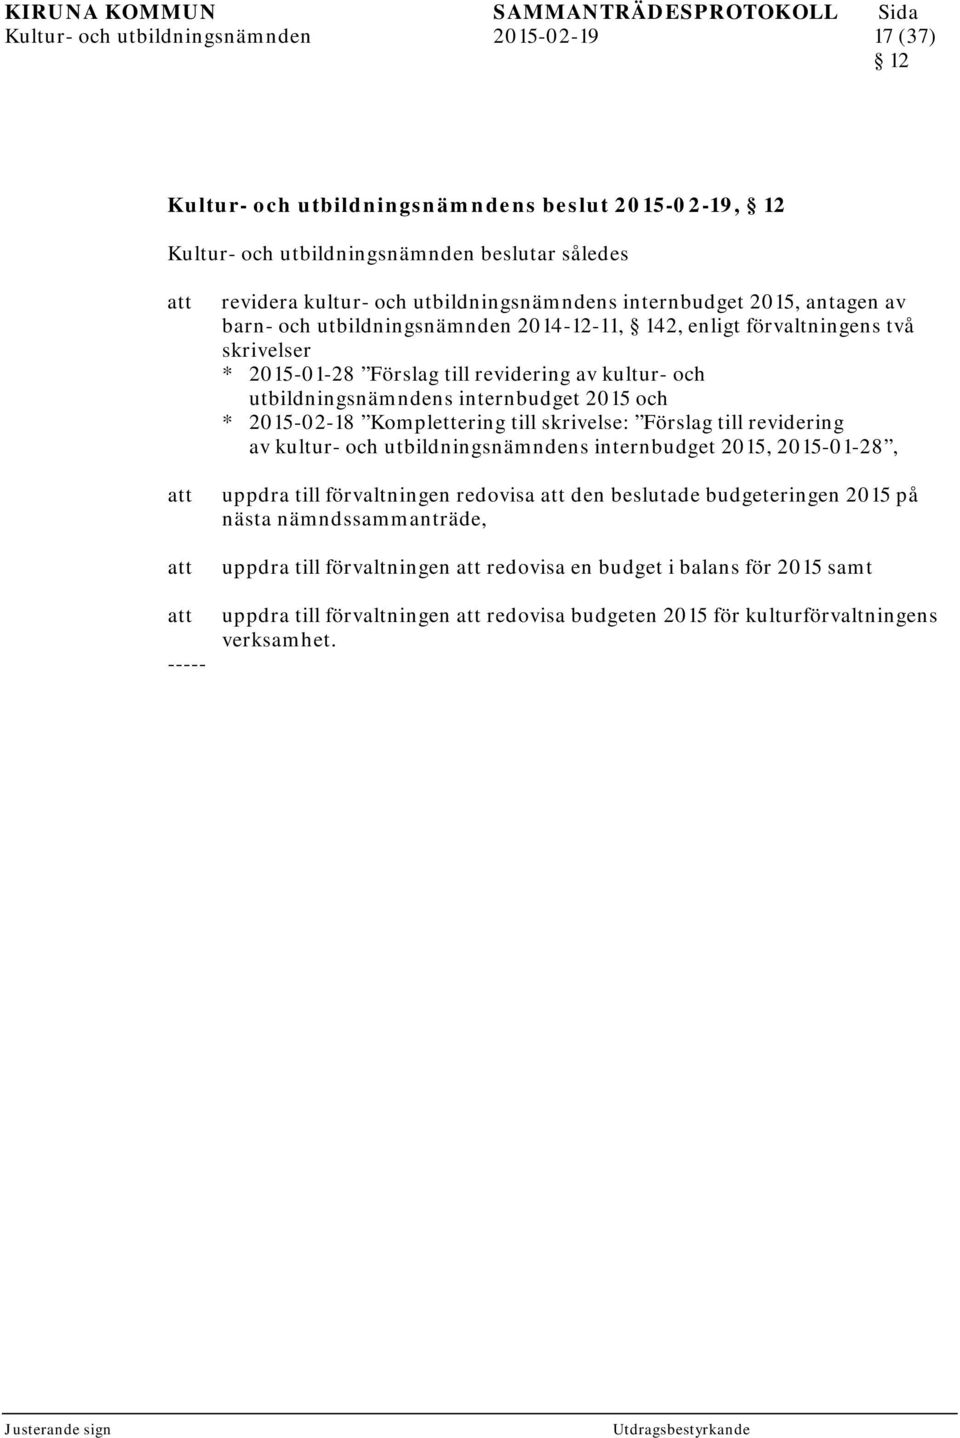 internbudget 2015 och * 2015-02-18 Komplettering till skrivelse: Förslag till revidering av kultur- och utbildningsnämndens internbudget 2015, 2015-01-28, uppdra till förvaltningen redovisa den